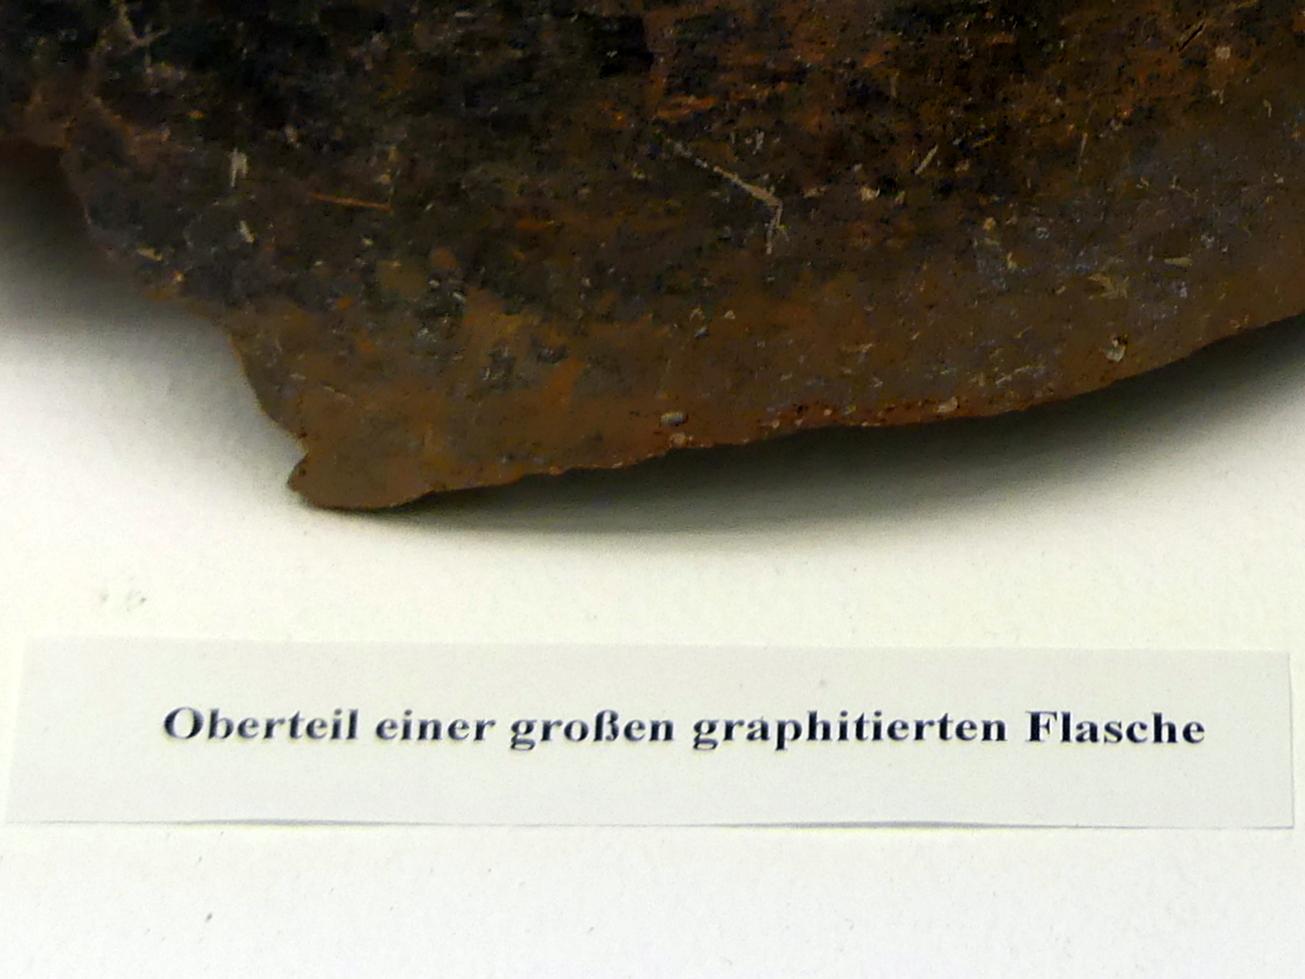 Oberteil einer großen graphitierten Flasche, Frühlatènezeit A, 700 - 100 v. Chr., Bild 2/2